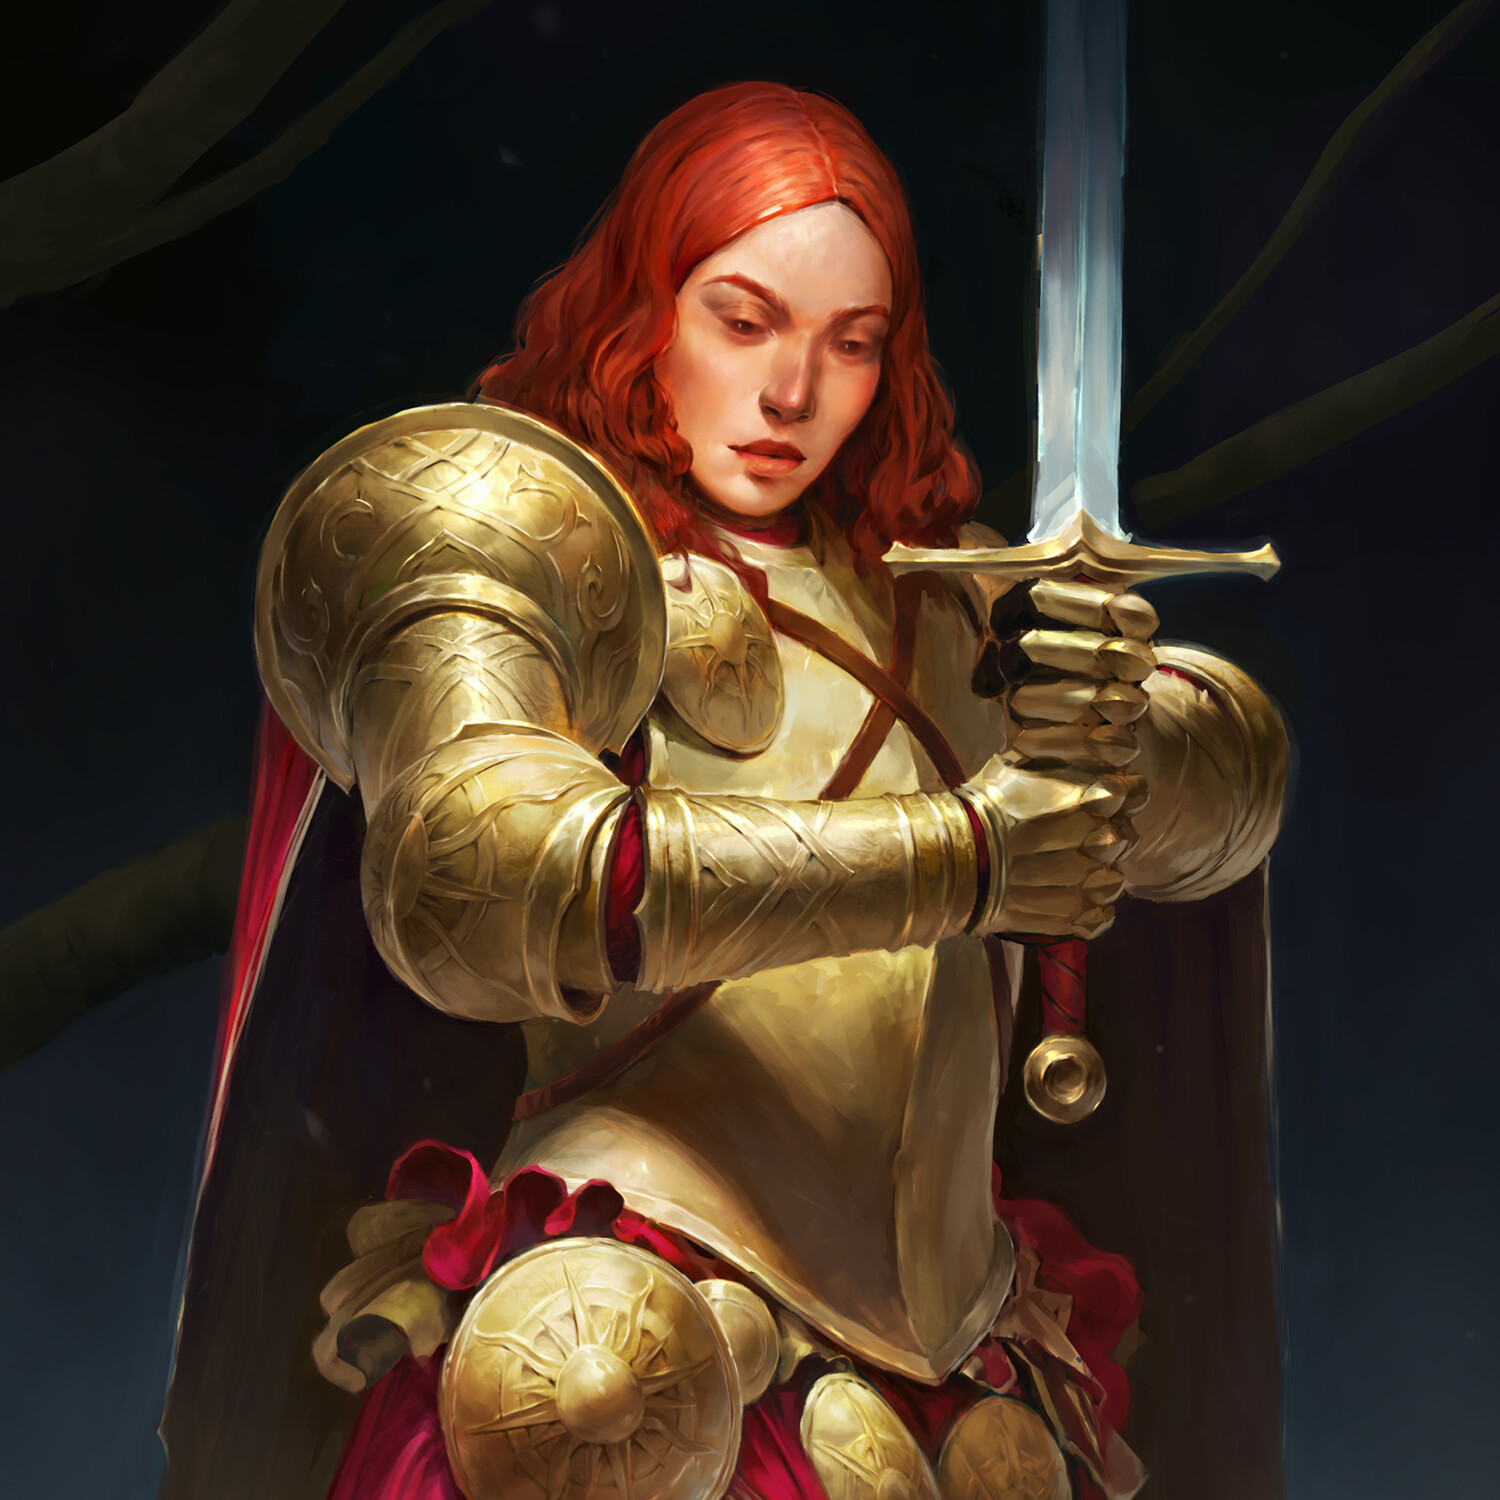 ArtStation - Girl in a golden armor